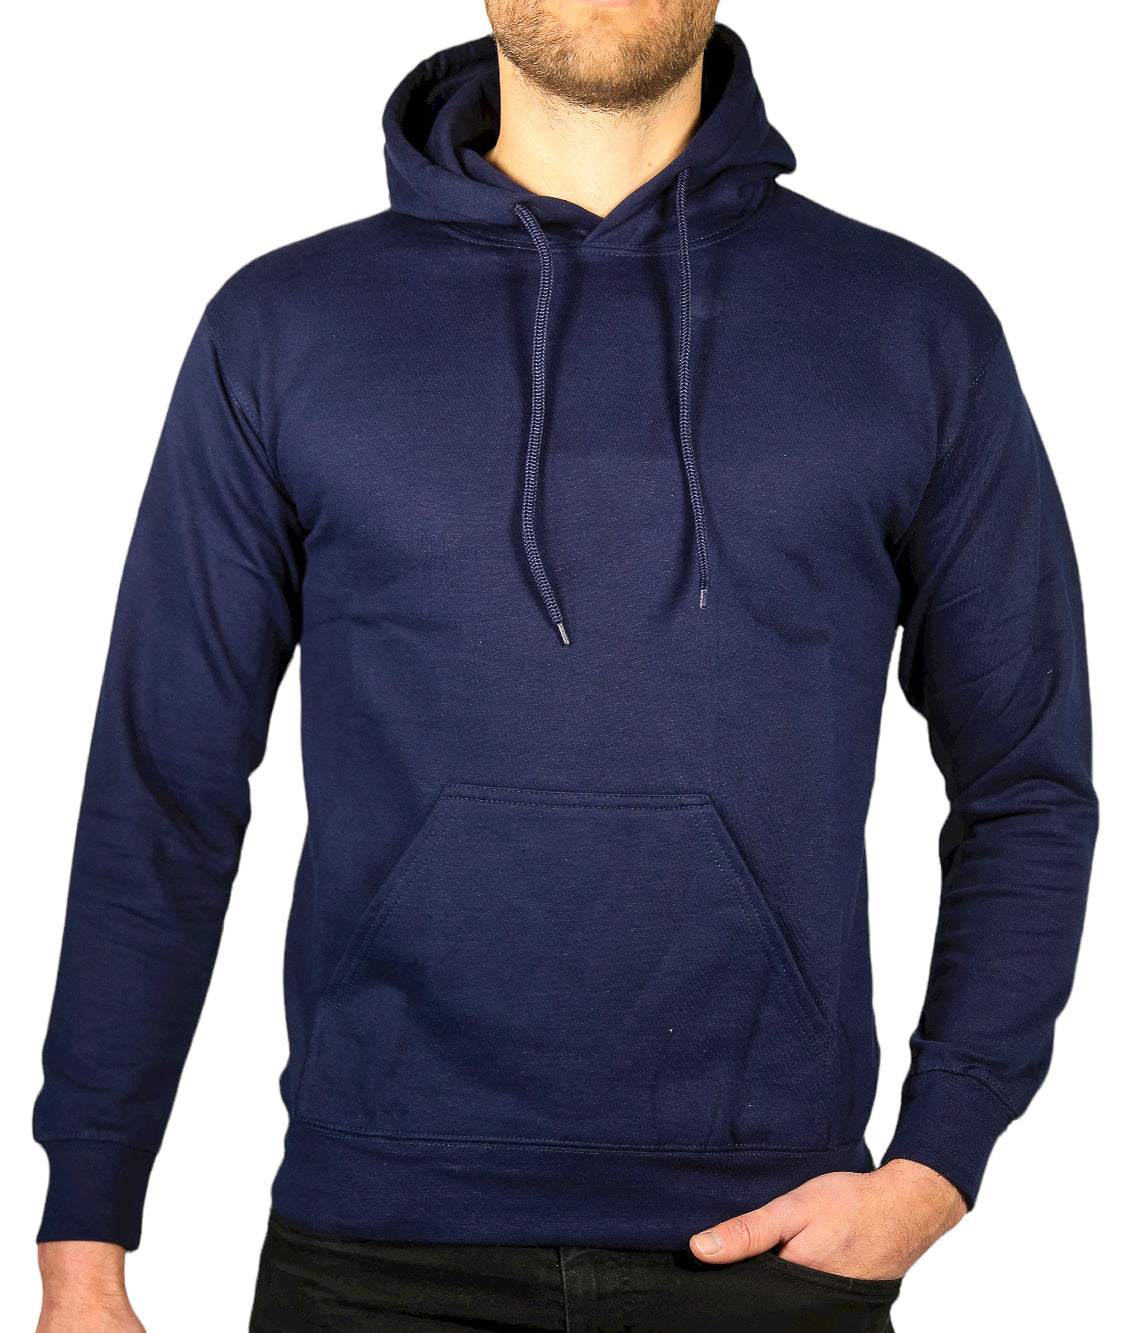 Adult Mens 100% Cotton Fleece Hoodie Jumper Pullover Sweater Warm Sweatshirt - Navy - S